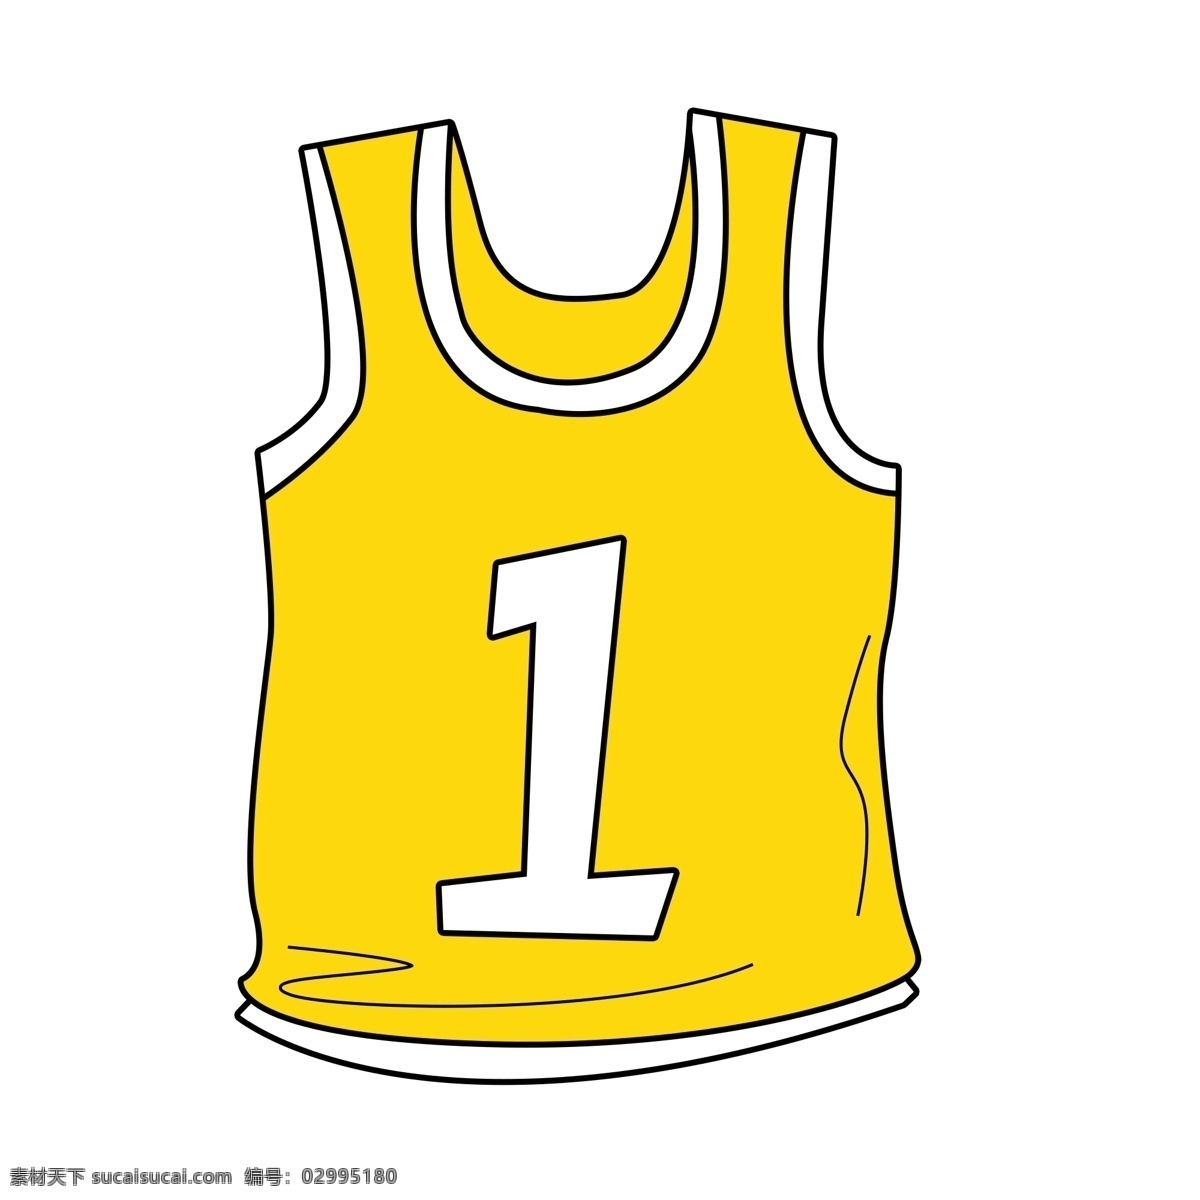 篮球 篮球服 篮球衣 衣服 衣服元素 衣服素材 衬衫 衬衫元素 衬衫素材 衬衫衣服 t恤 t恤元素 t恤素材 黄色t恤 黄色衣服 黄色元素 黄色素材 元素设计 分层